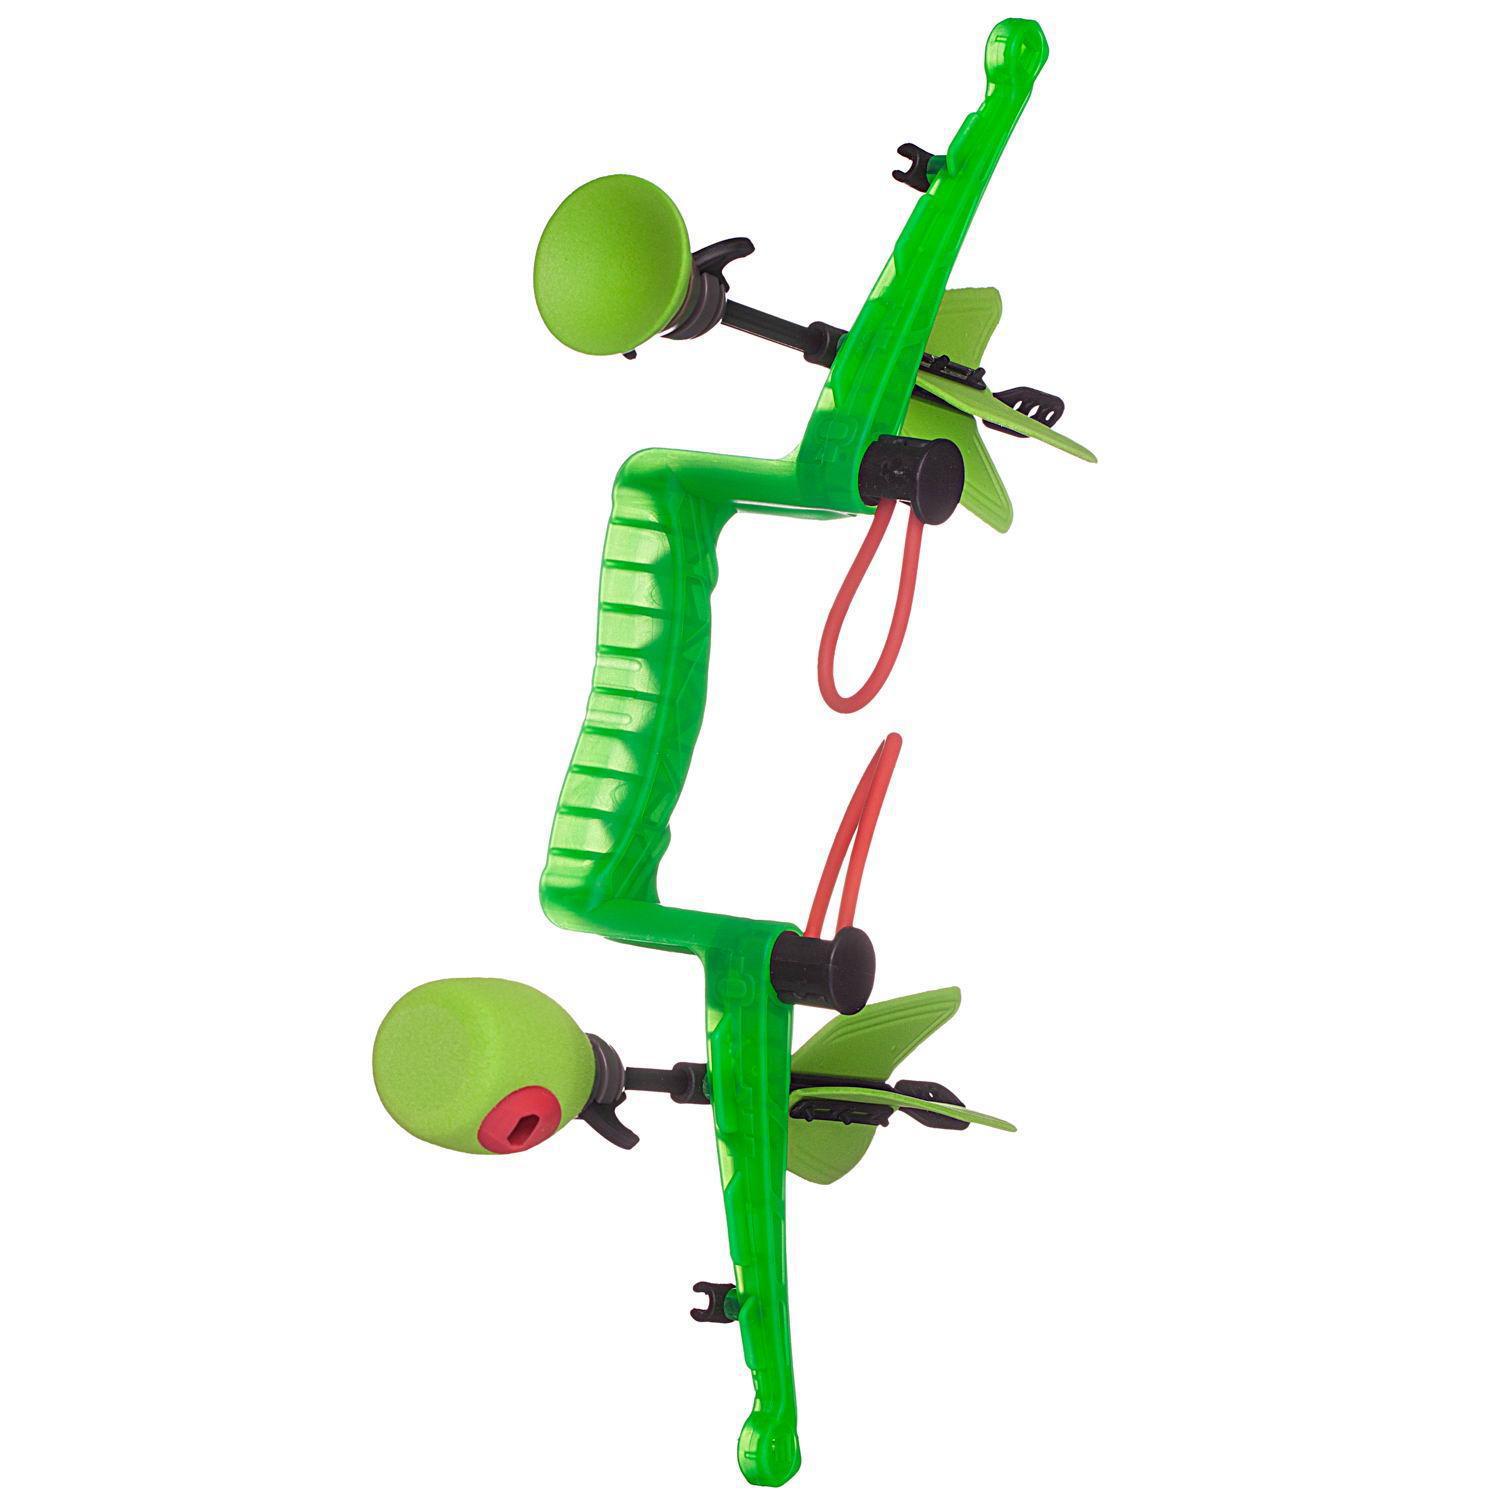 Лук игрушечный игровой Abtoys с 2 стрелами, зеленый арбалет abtoys со стрелами на присосках зеленый s 00056